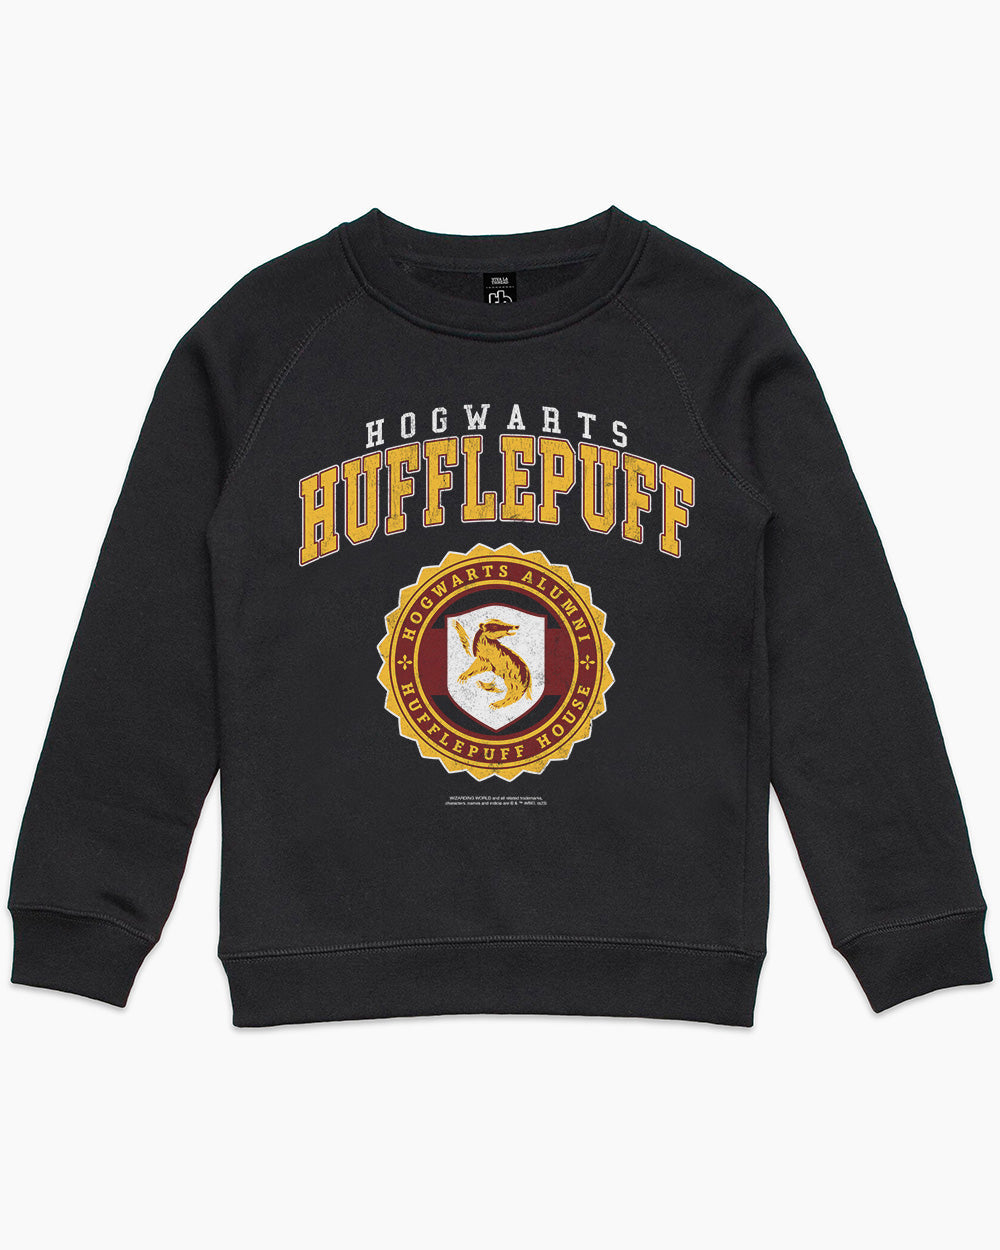 Potter | Kids Jumper | College Threadheads Merch Harry Official Hufflepuff